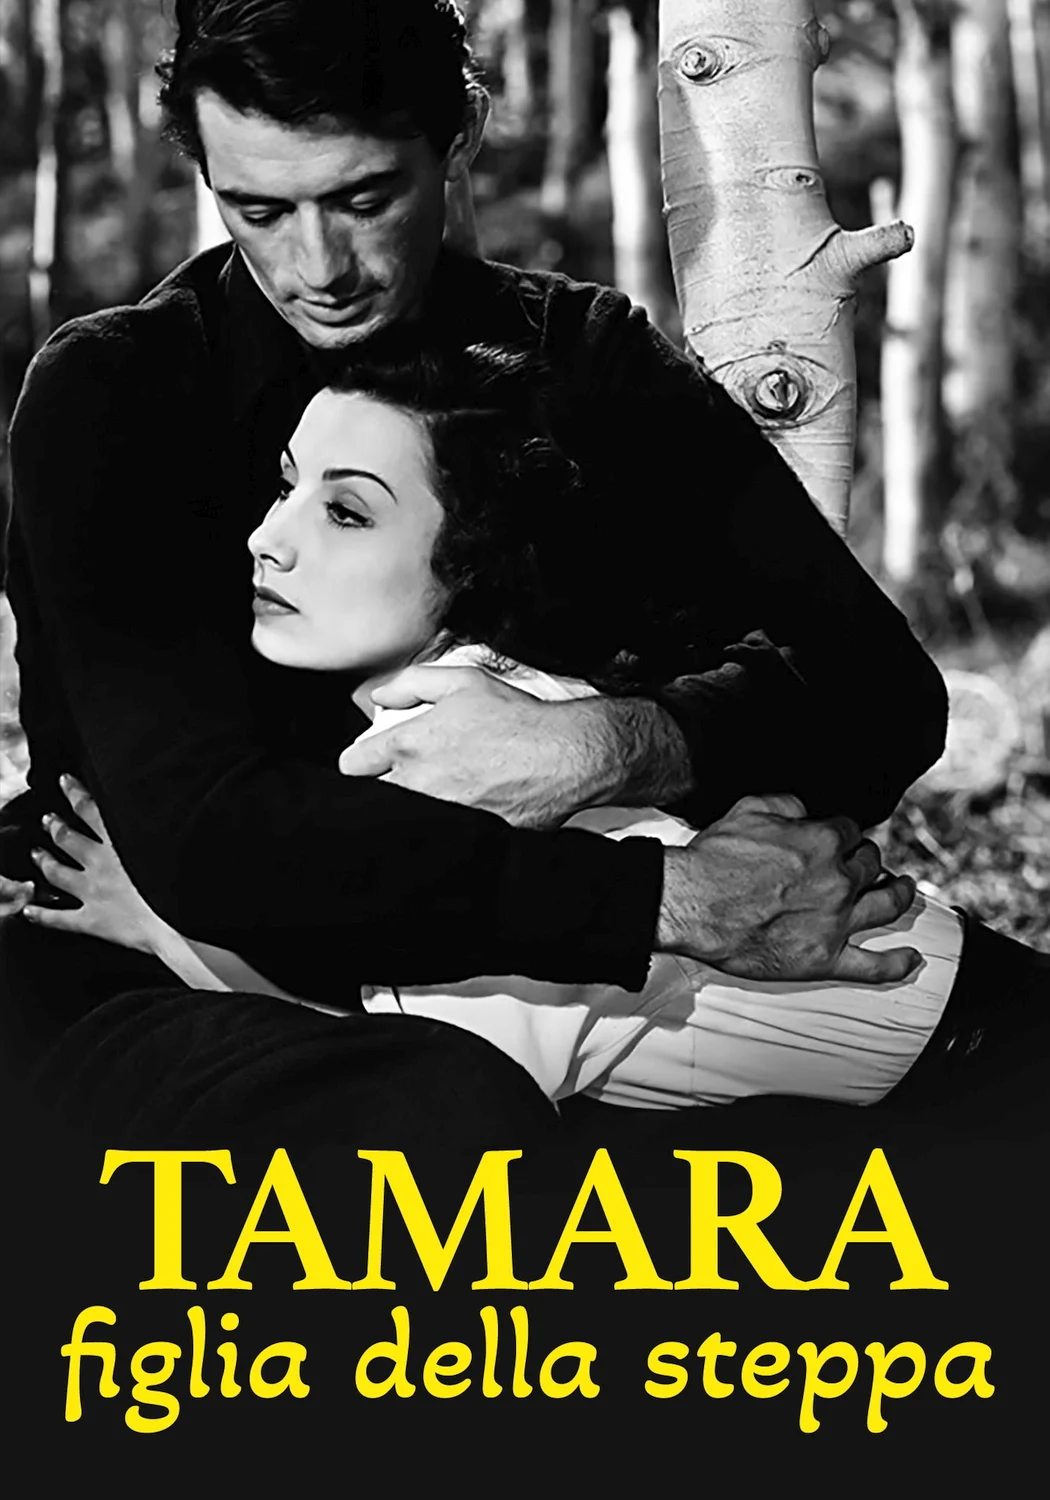 Tamara, figlia della steppa [B/N] (1944)